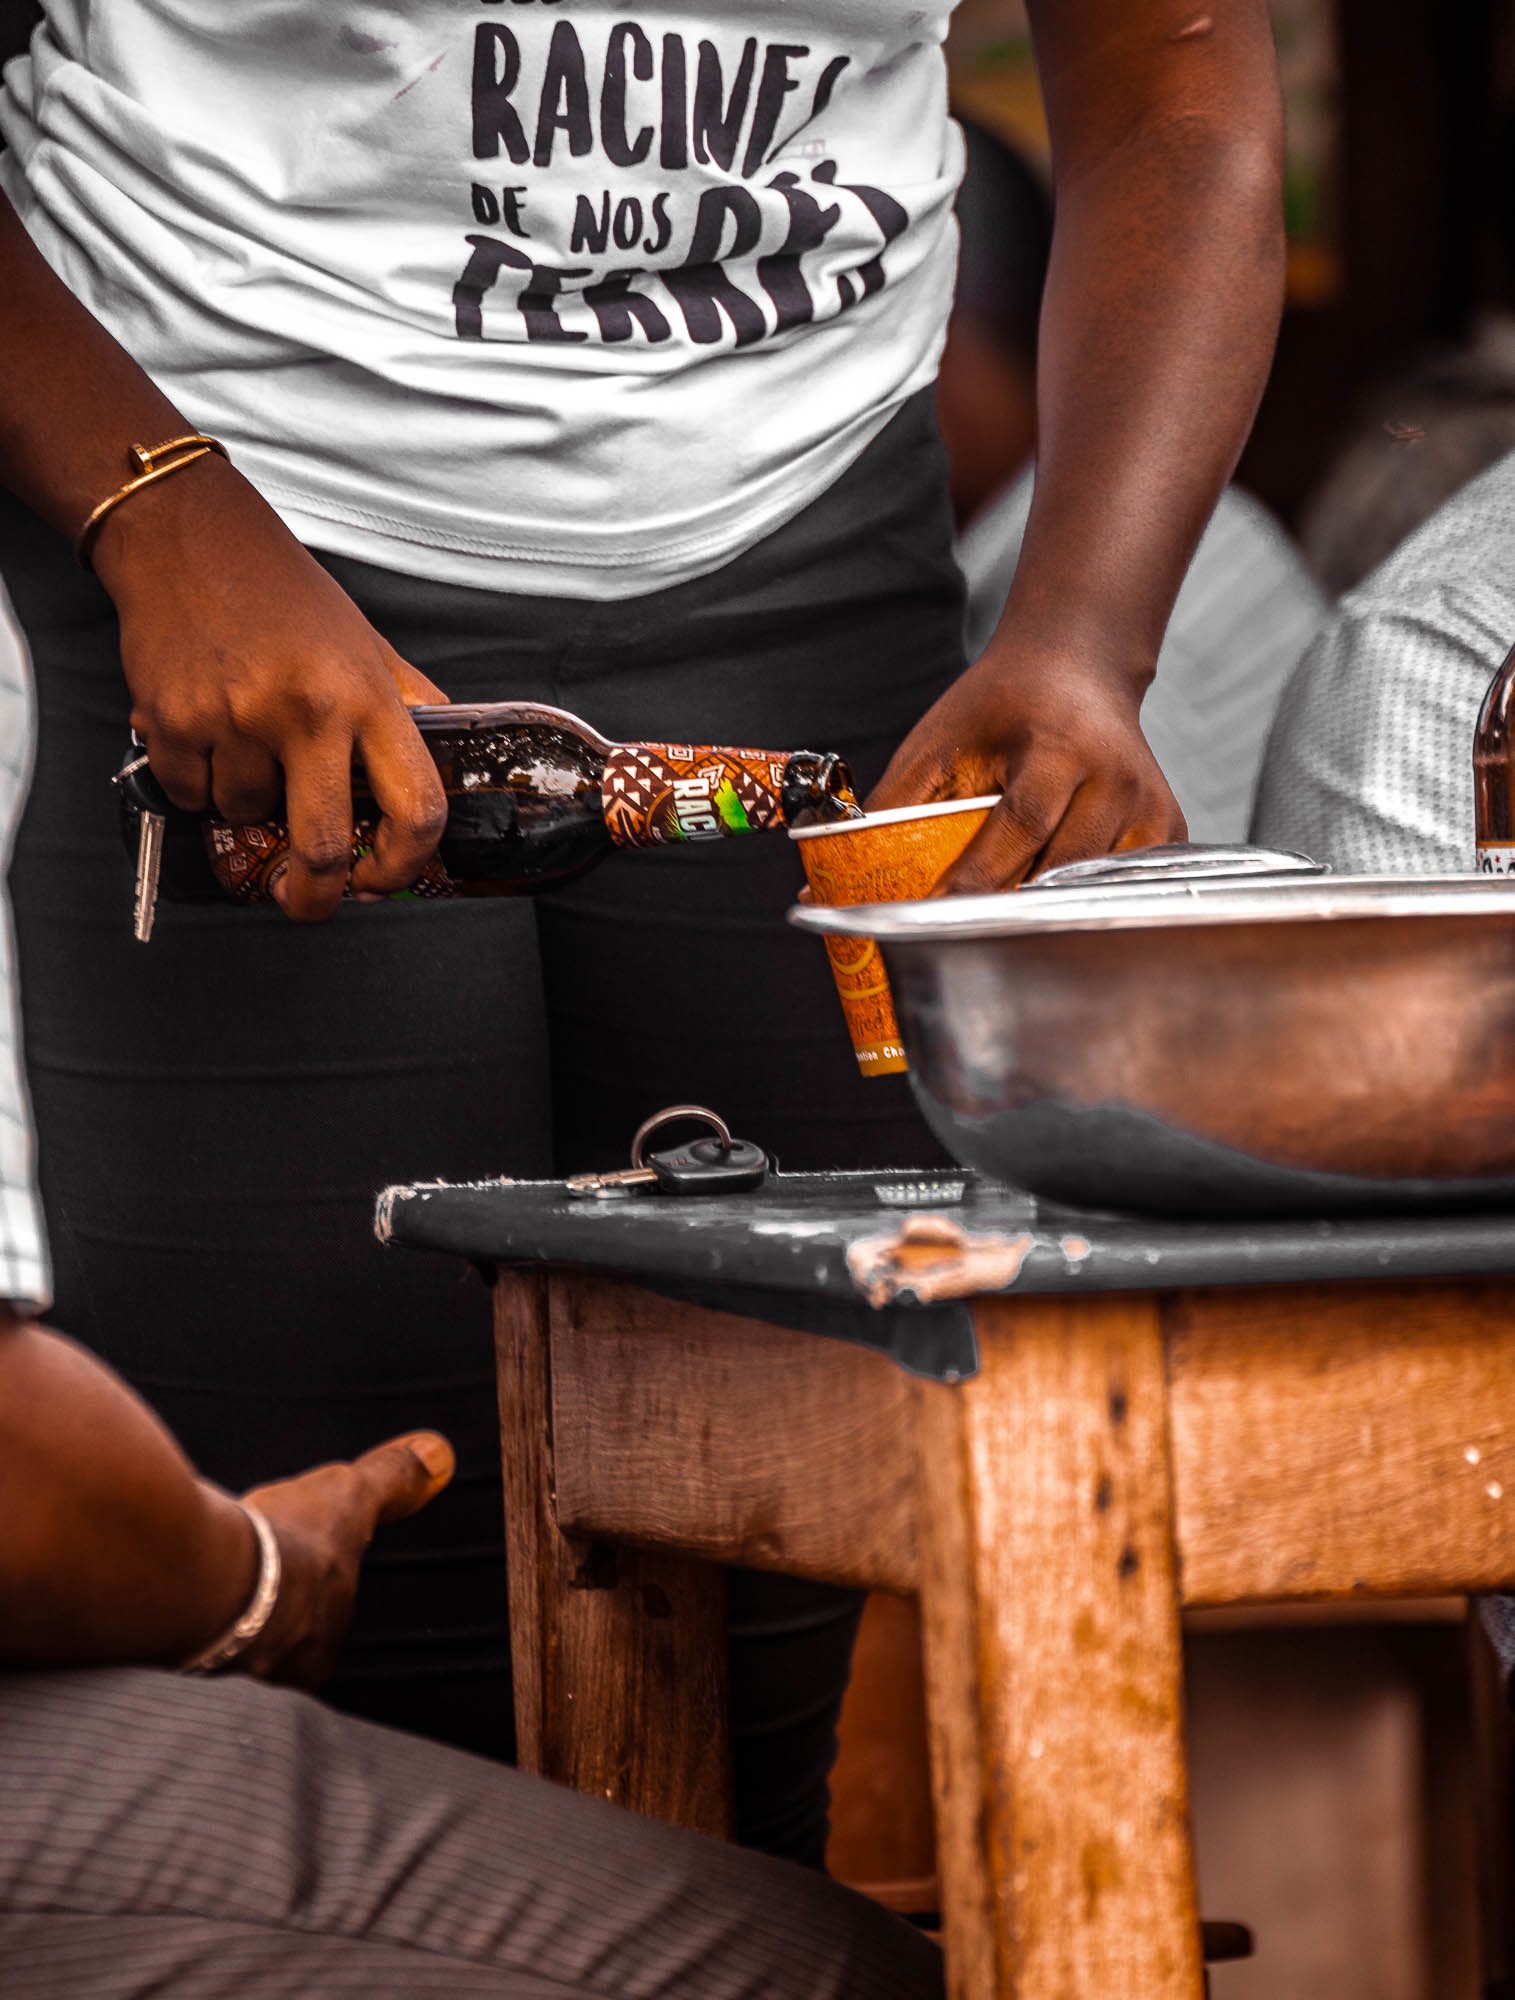 Société Béninoise de Brasseries: La boisson «Racines» de nos